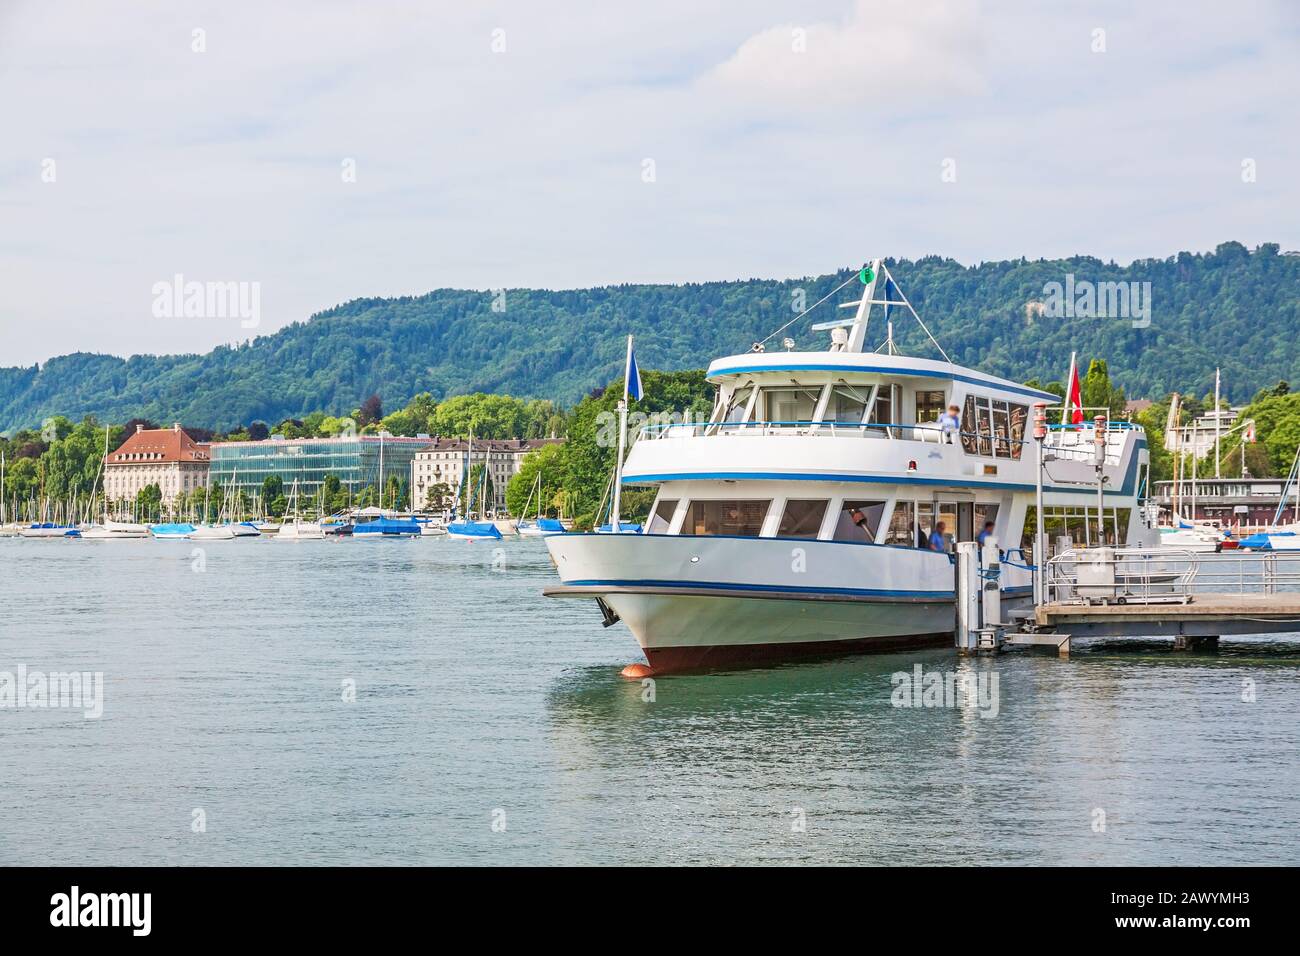 Zurich, Switzerland - June 10, 2017: Excursion boat arriving at shipping pier Burkliplatz. Western bank of Lake Zurich, Mythenquai / Enge in backgroun Stock Photo